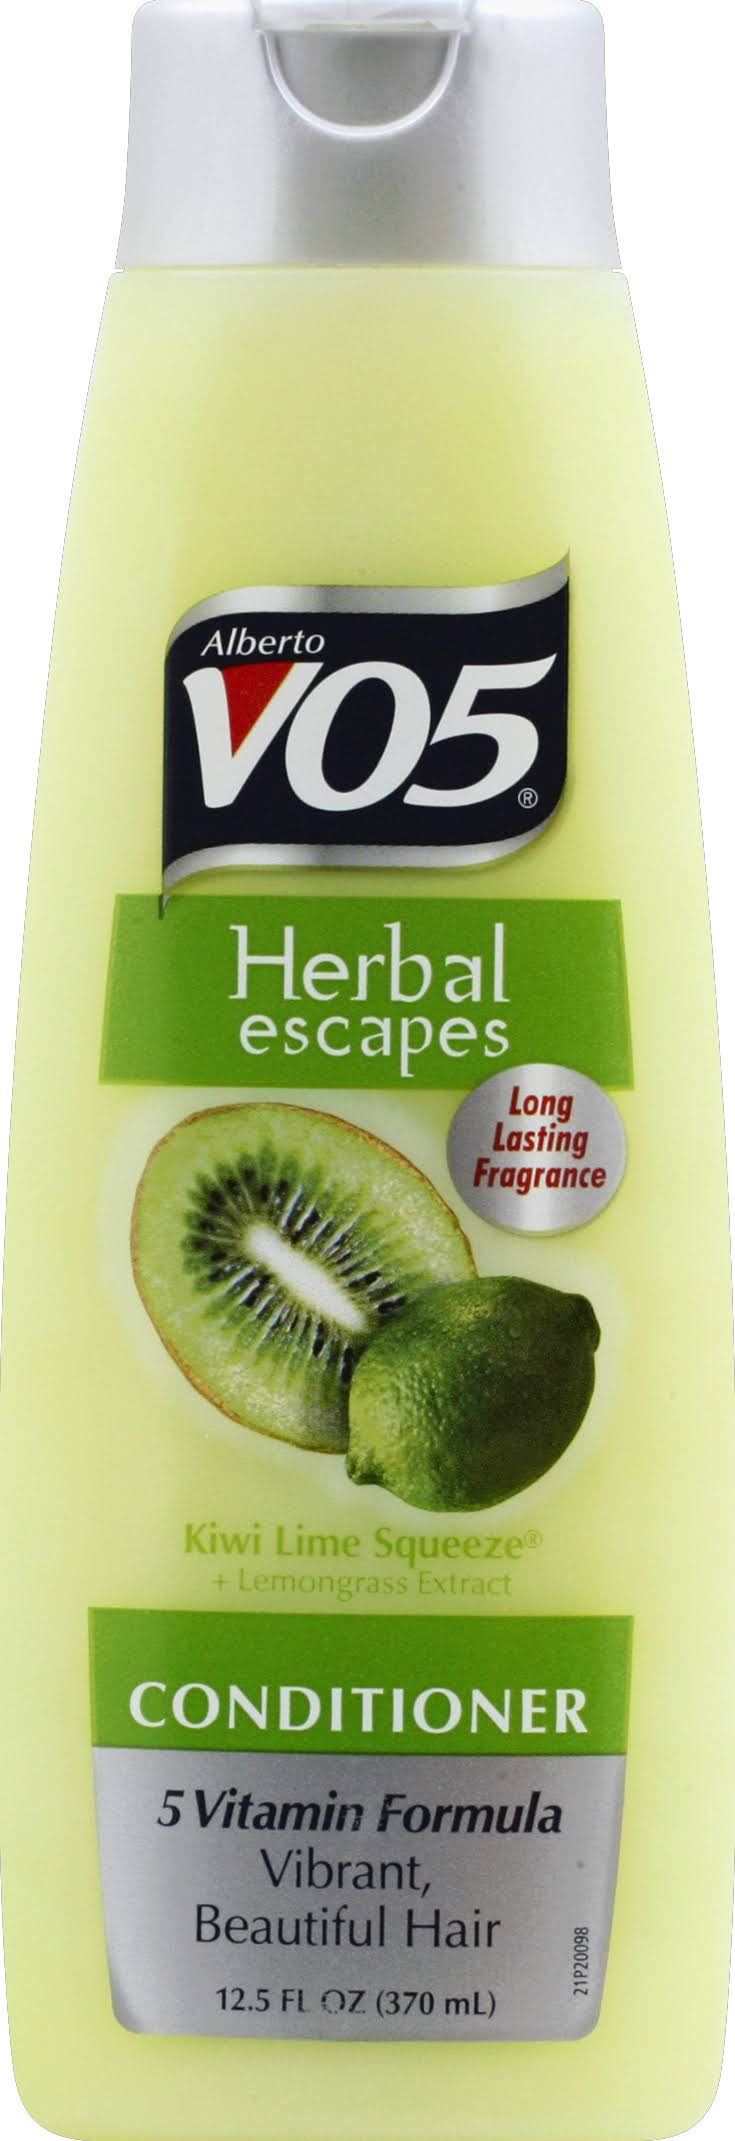 Alberto Vo5 Herbal Escapes Conditioner - Kiwi Lime